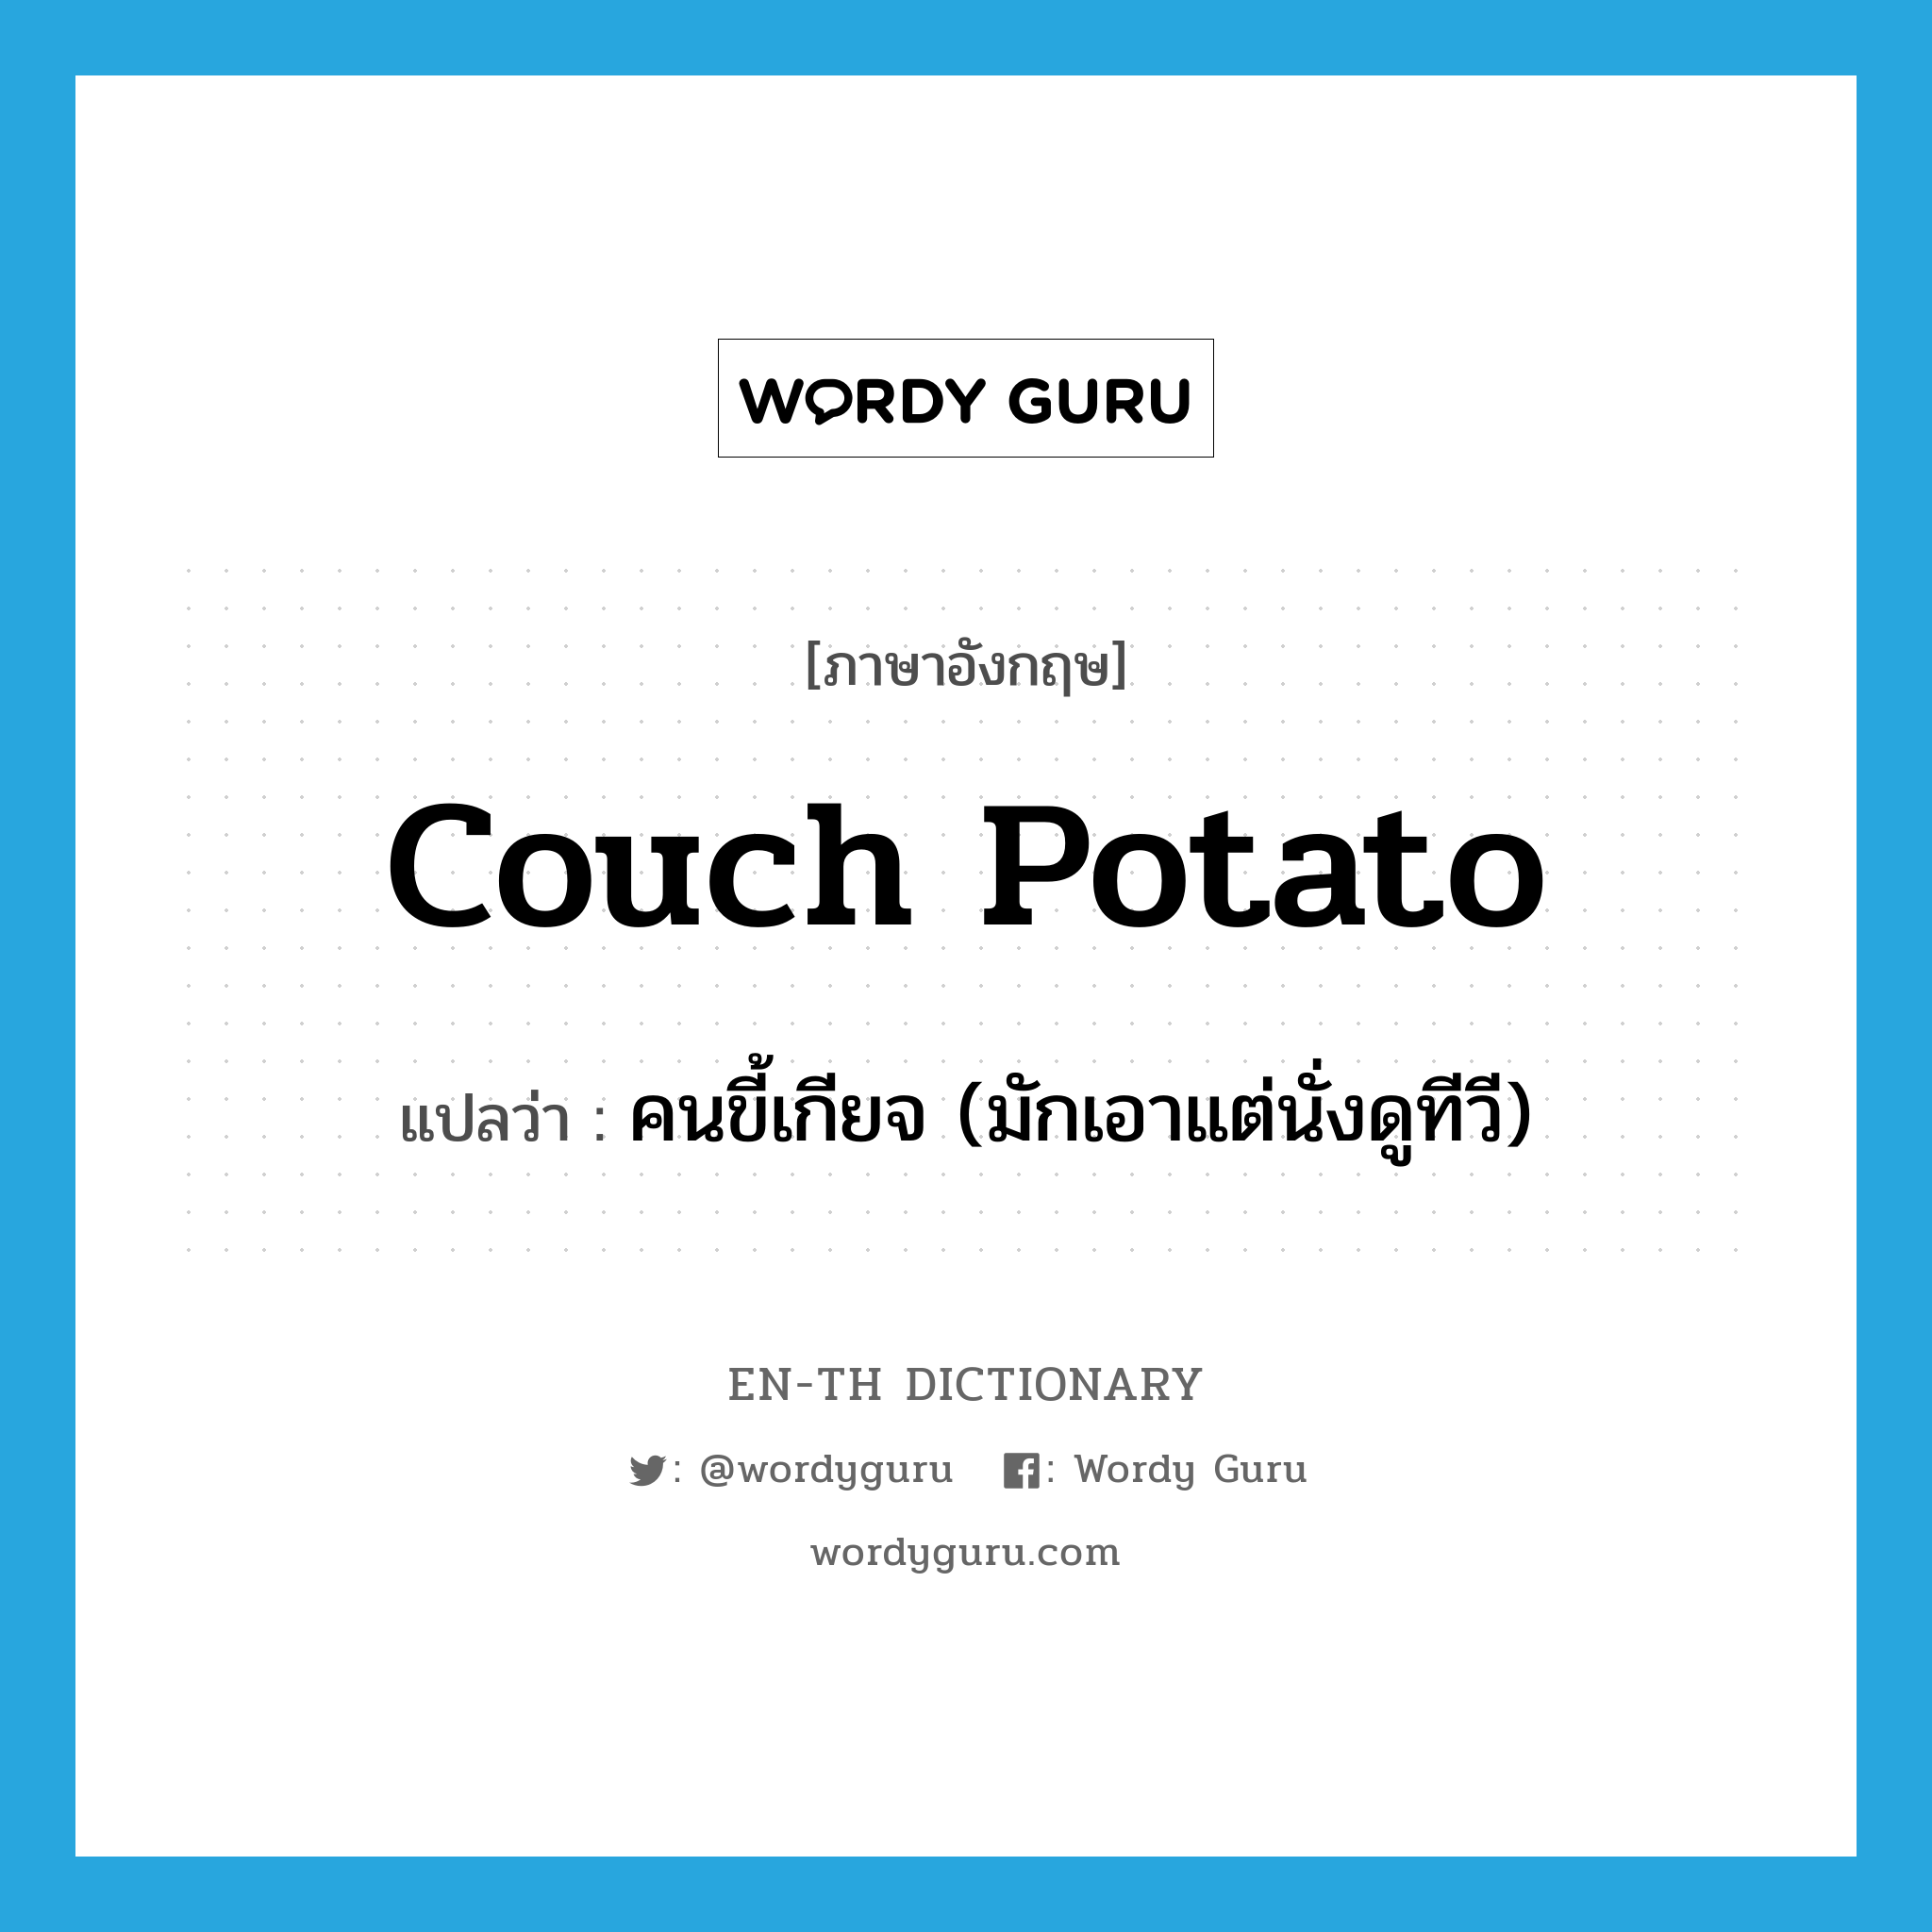 คนขี้เกียจ (มักเอาแต่นั่งดูทีวี) ภาษาอังกฤษ?, คำศัพท์ภาษาอังกฤษ คนขี้เกียจ (มักเอาแต่นั่งดูทีวี) แปลว่า couch potato ประเภท SL หมวด SL